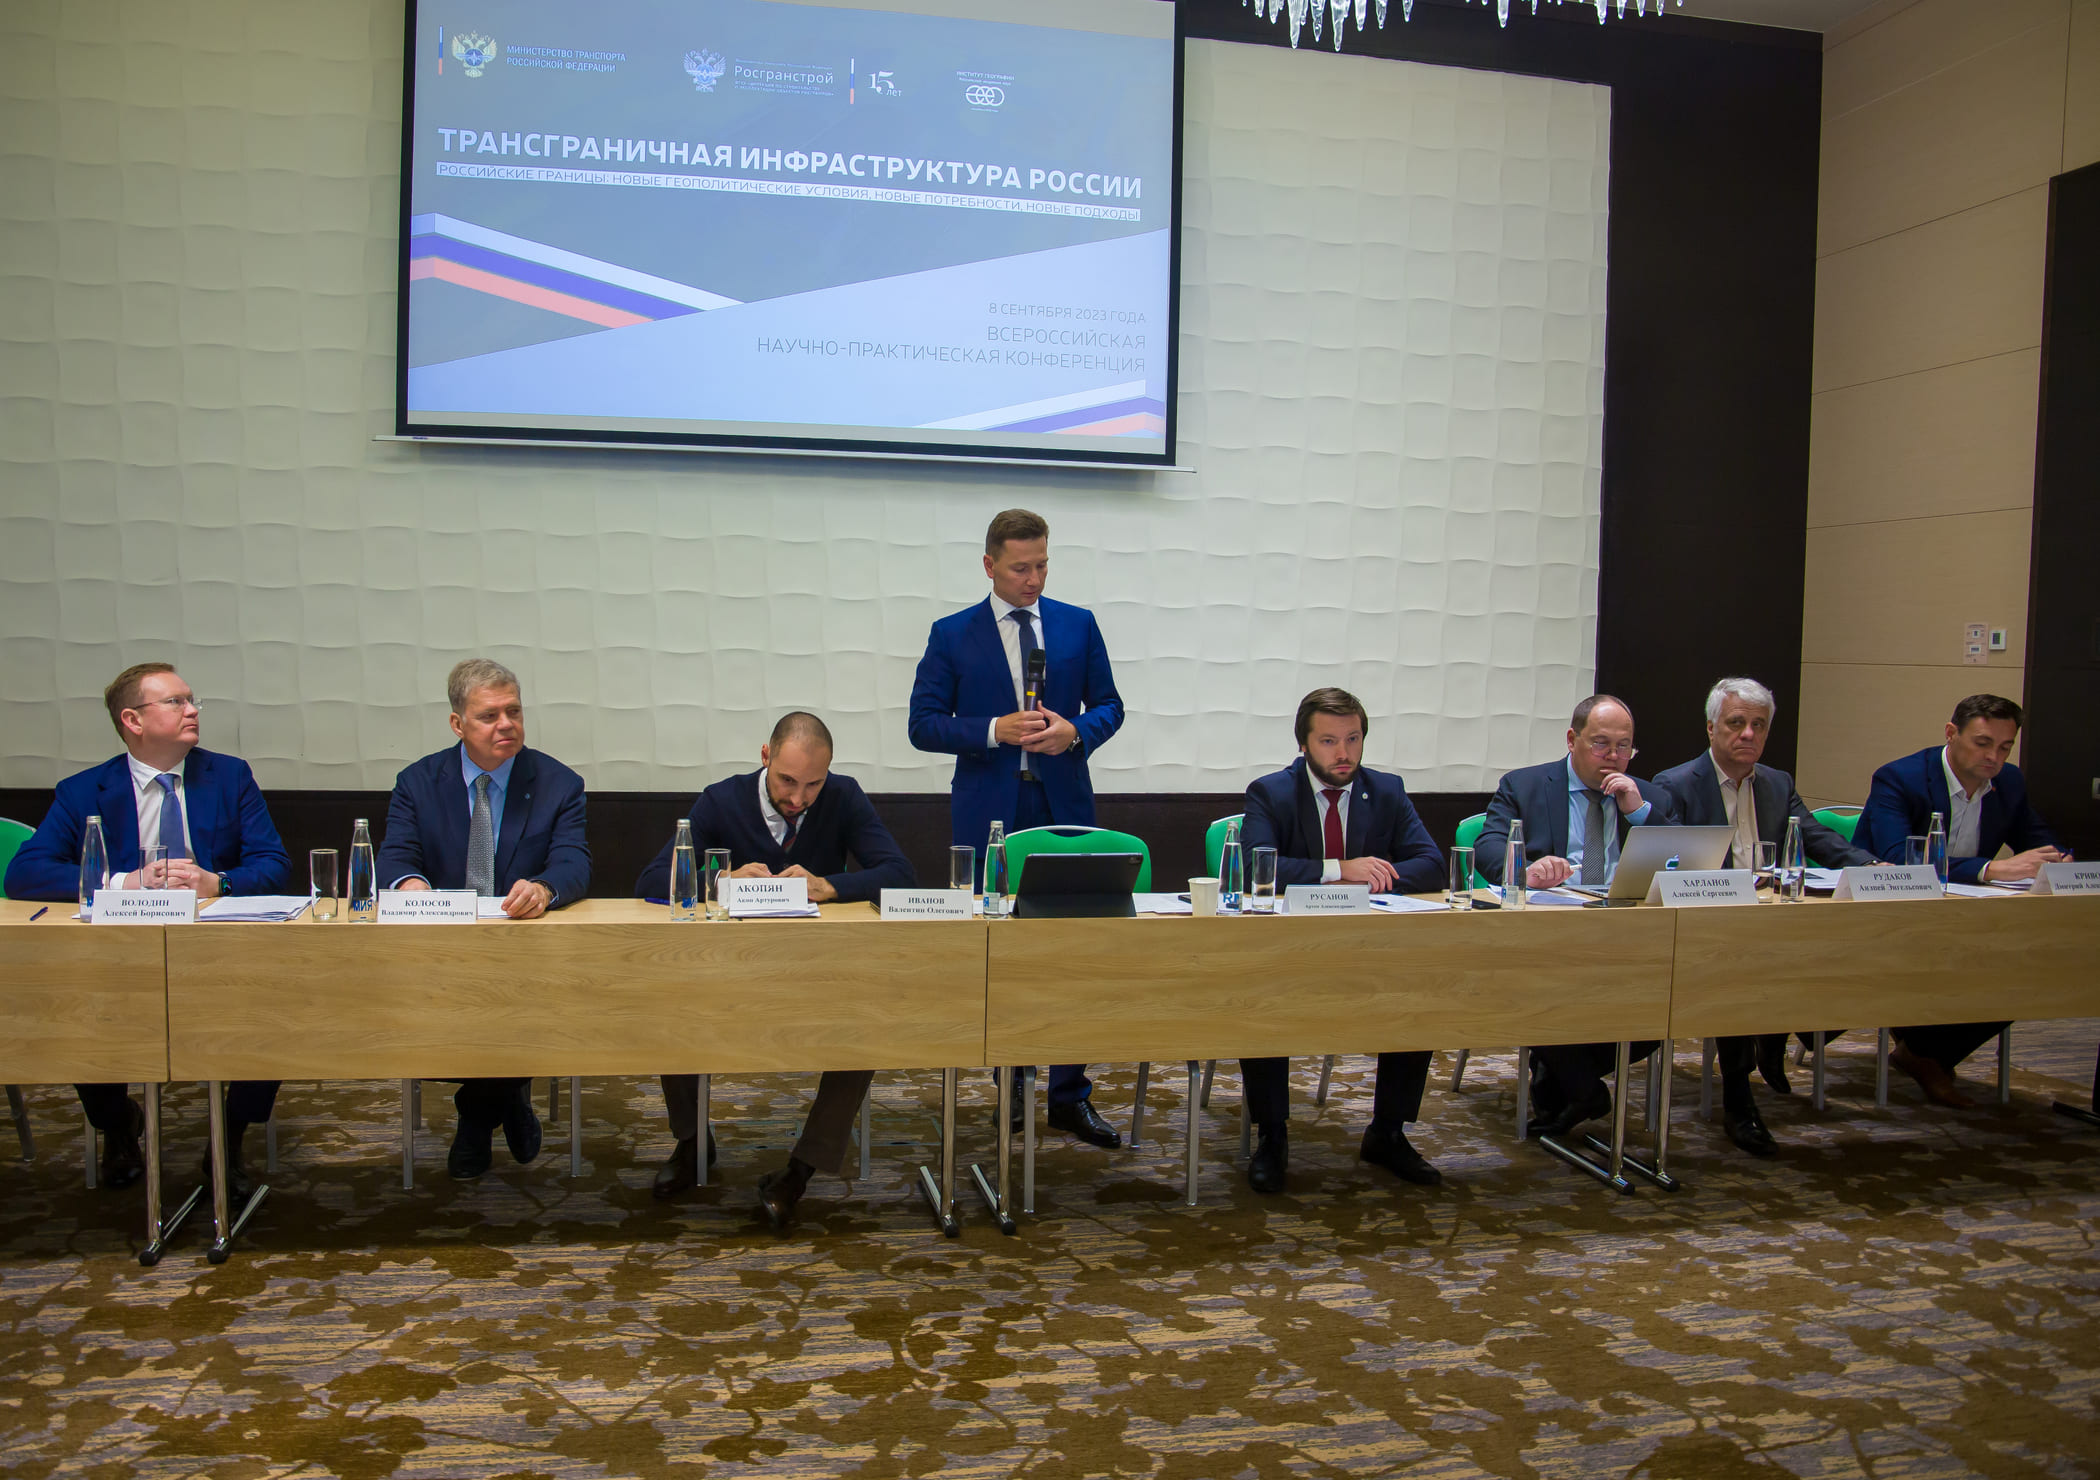 Международный аэропорт Внуково принял участие во Всероссийской конференции, приуроченной к 15-летию ФГКУ Росгранстрой